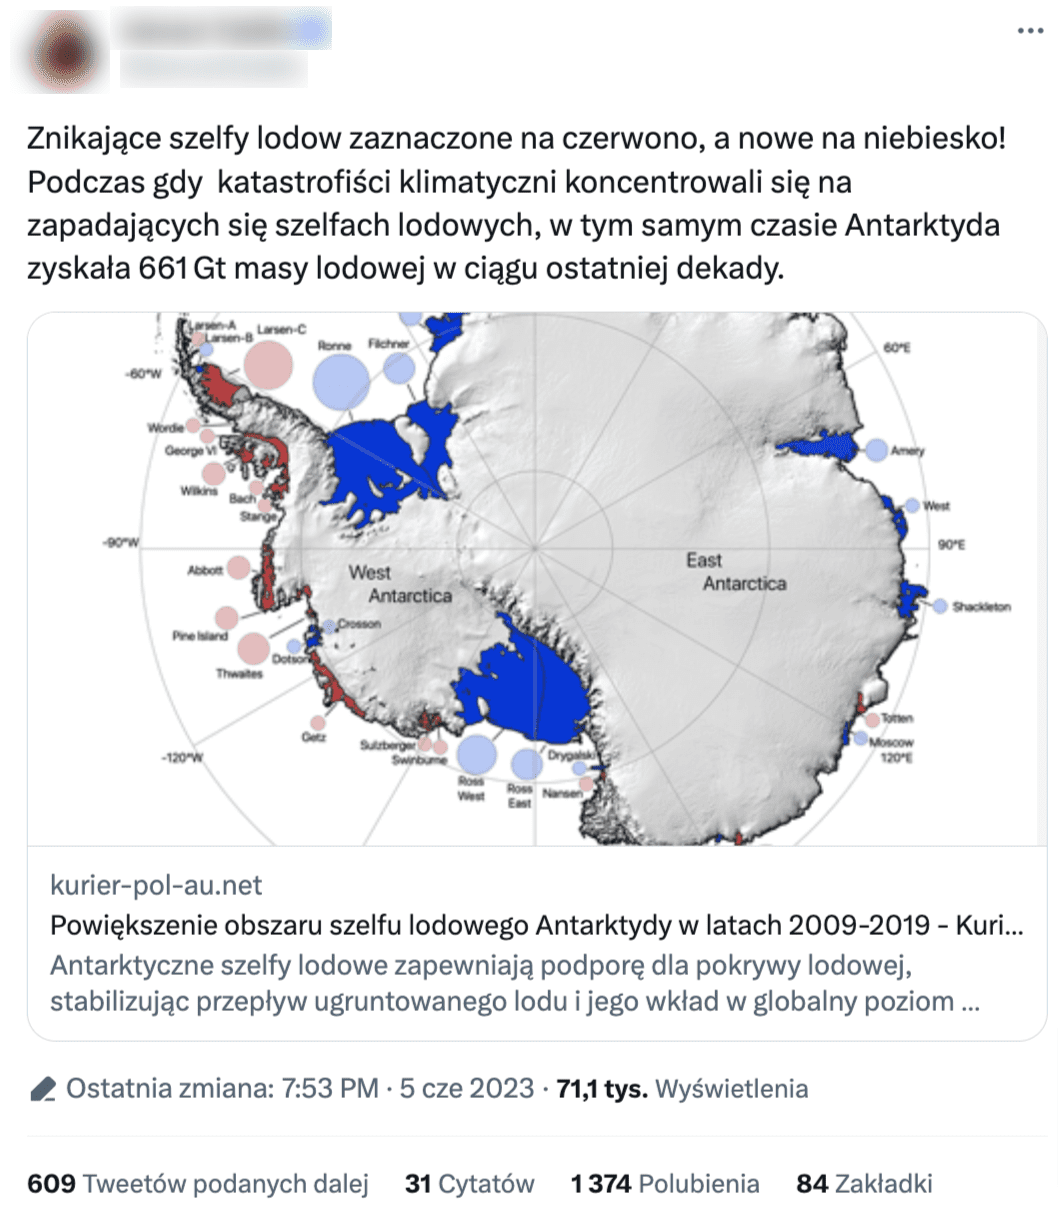 Tweet ze zrzutem ekranu mapy, gdzie na czerwono zaznaczono ubytki powierzchni szelfów lodowych (Antarktyda Zachodnia), a na niebiesko przybywanie powierzchni (Antarktyda Wschodnia).